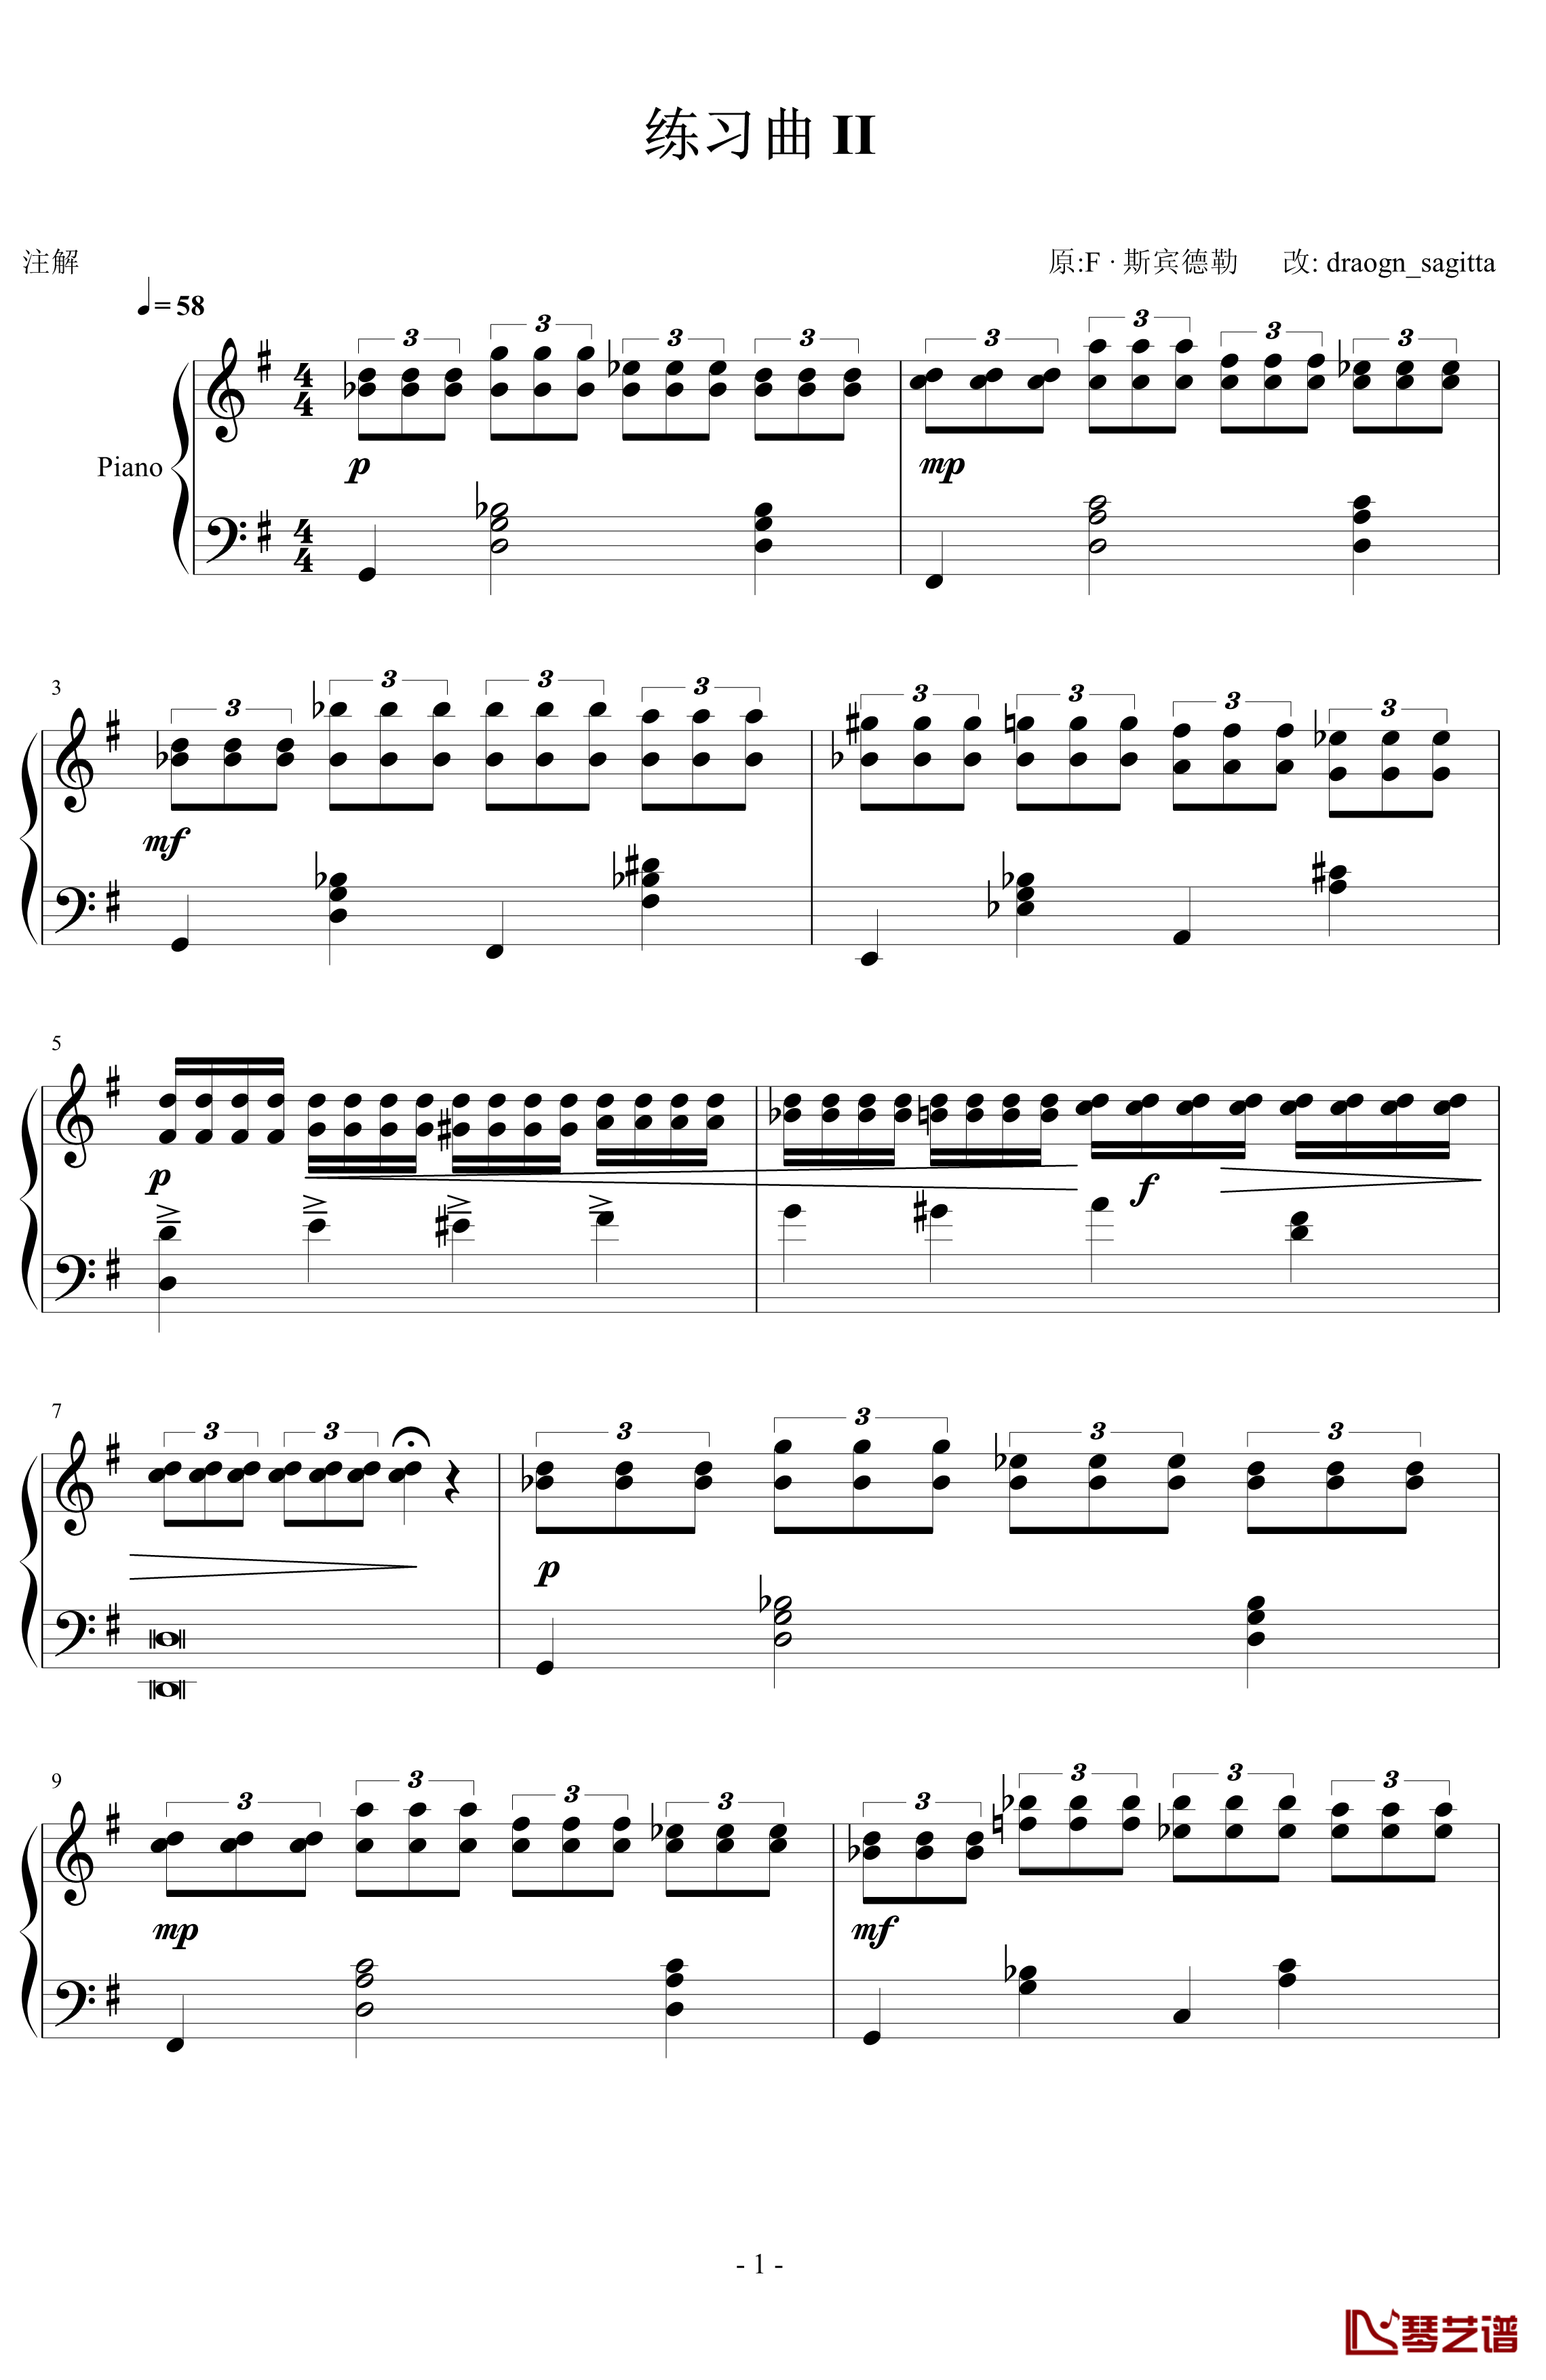 练习曲II钢琴谱-F.斯宾特勒1